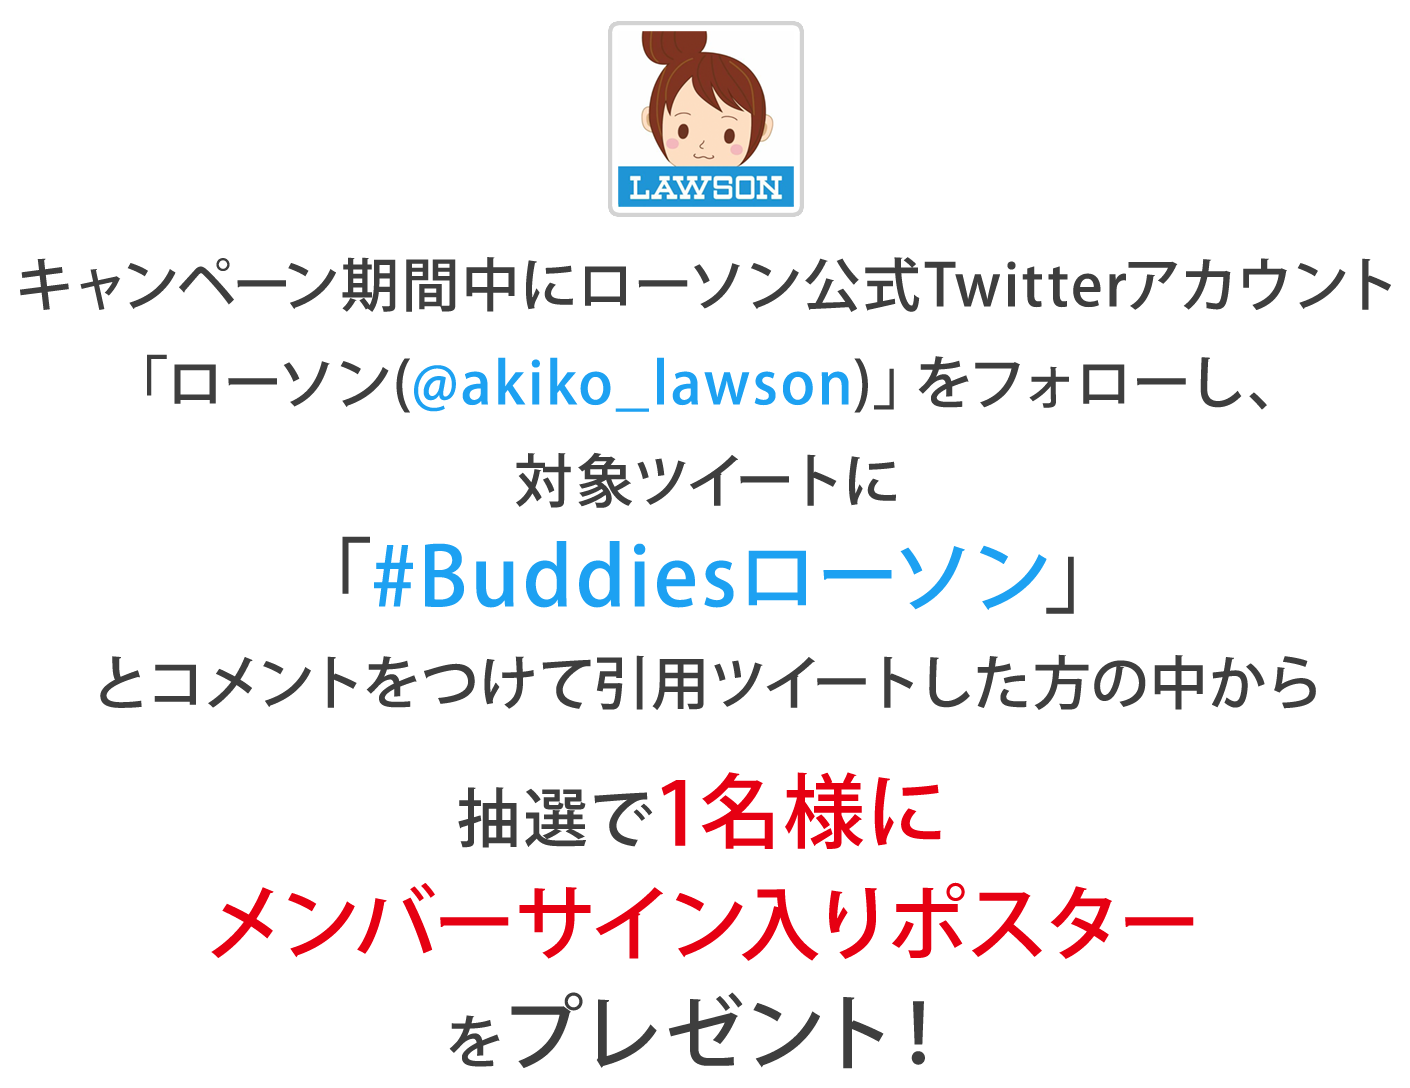 キャンペーン期間中にローソン公式Twitterアカウント
                「ローソン(@akiko_lawson)」をフォローし、対象ツイートに「#Buddiesローソン」とコメントをつけて引用ツイートした方の中から
                抽選で1名様にメンバーサイン入りポスターをプレゼント！